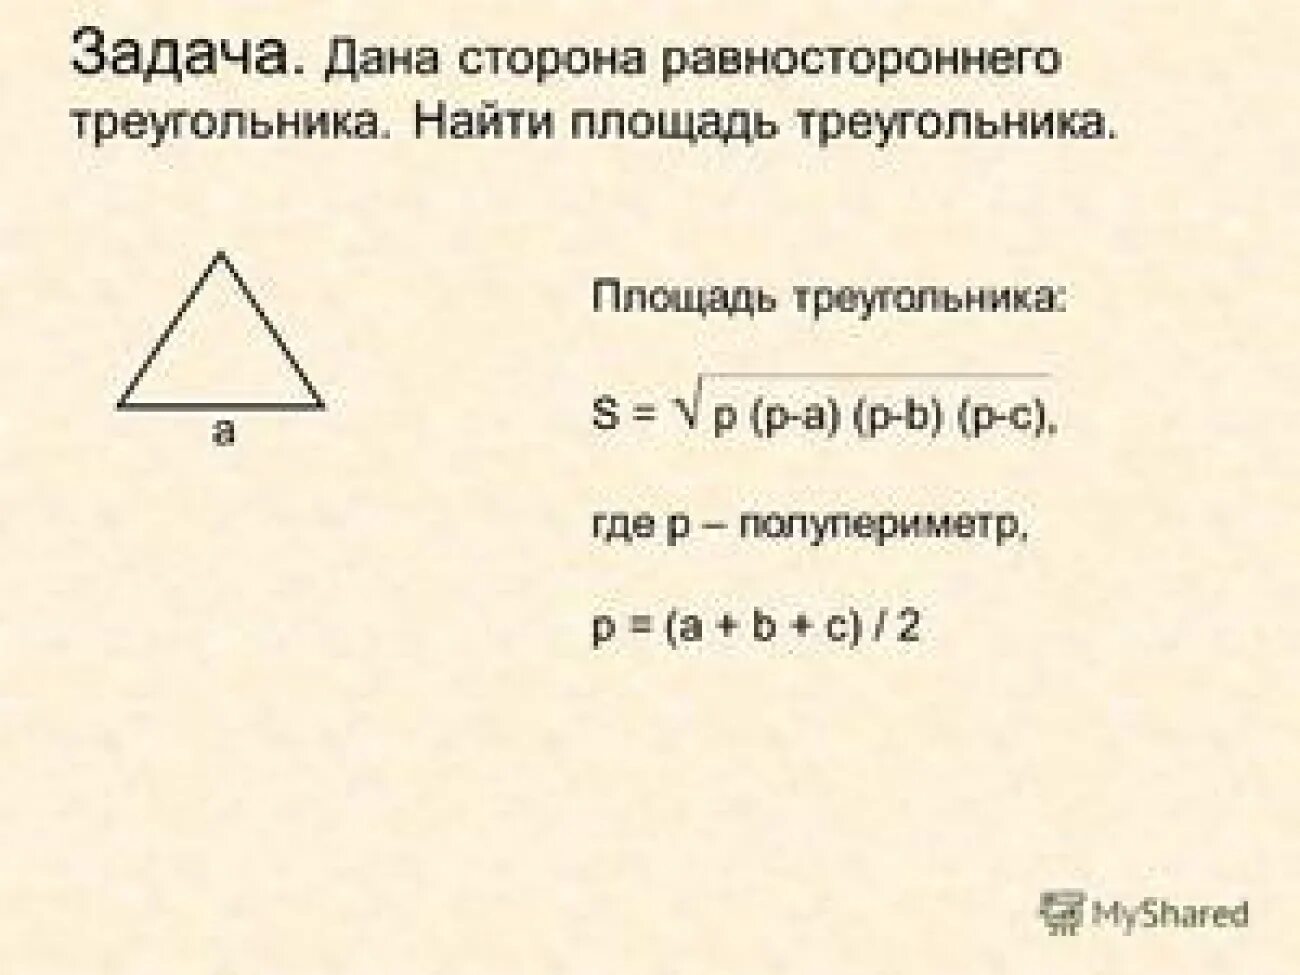 Формула герона по трем сторонам. Формула нахождения площади треугольника по 3 сторонам. Площадь треугольника формула по трем сторонам 3. Площадь треугольника формула по трем сторонам 4. Площадь треугольника по 3 сторонам формула.